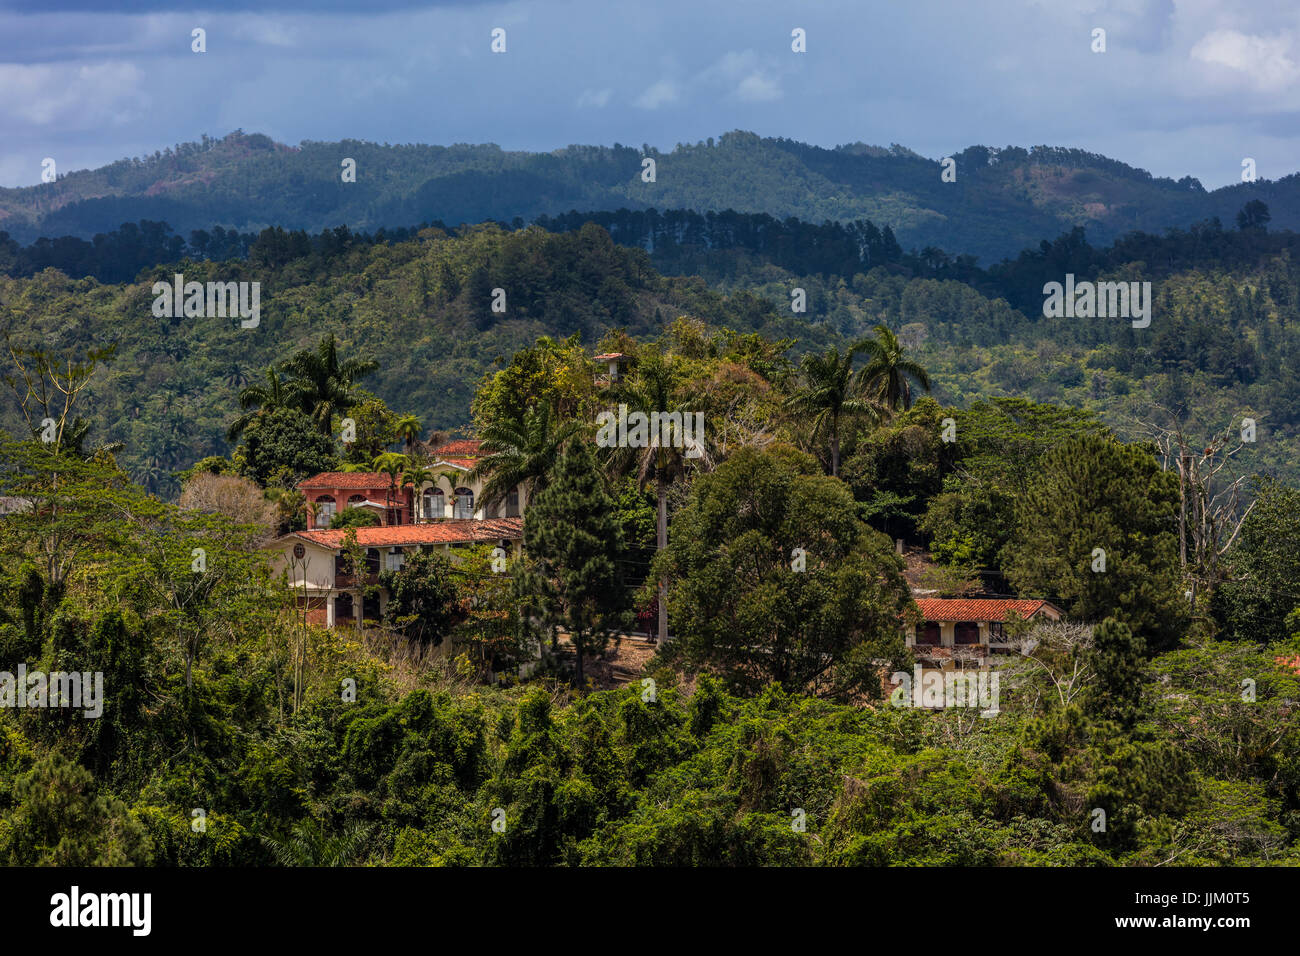 SPANISCHE Villa oberhalb SALTO DE CABURNÍ befindet sich am TOPES DE COLLANTES in den Bergen der SIERRA DEL ESCAMBRAY - Kuba Stockfoto